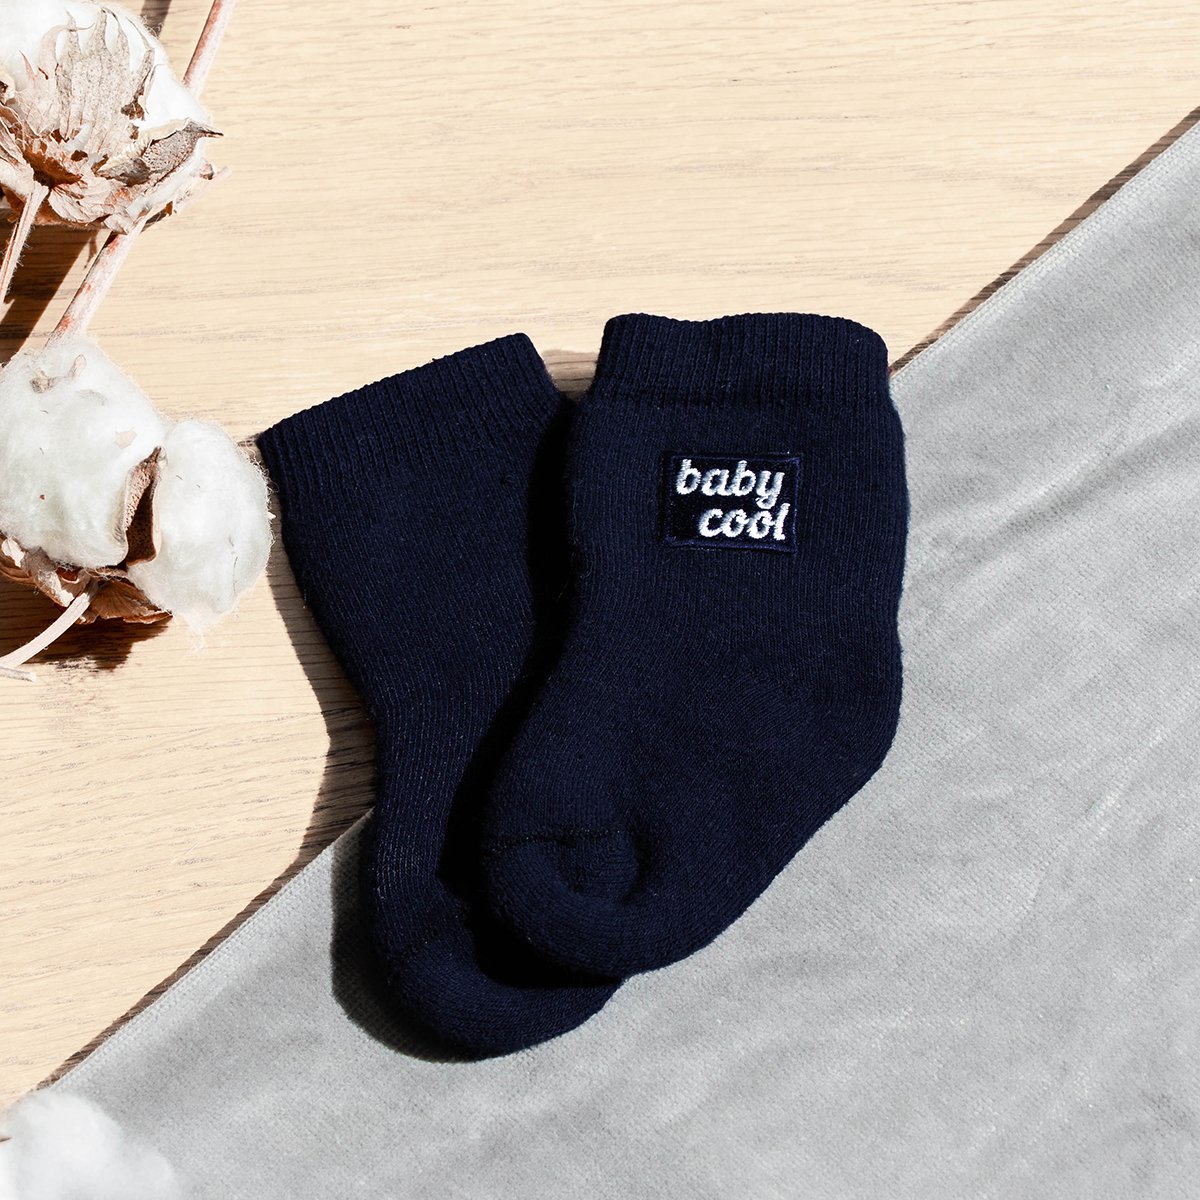 Cadeau de naissance original : le duo de chaussettes Papa & Bébé